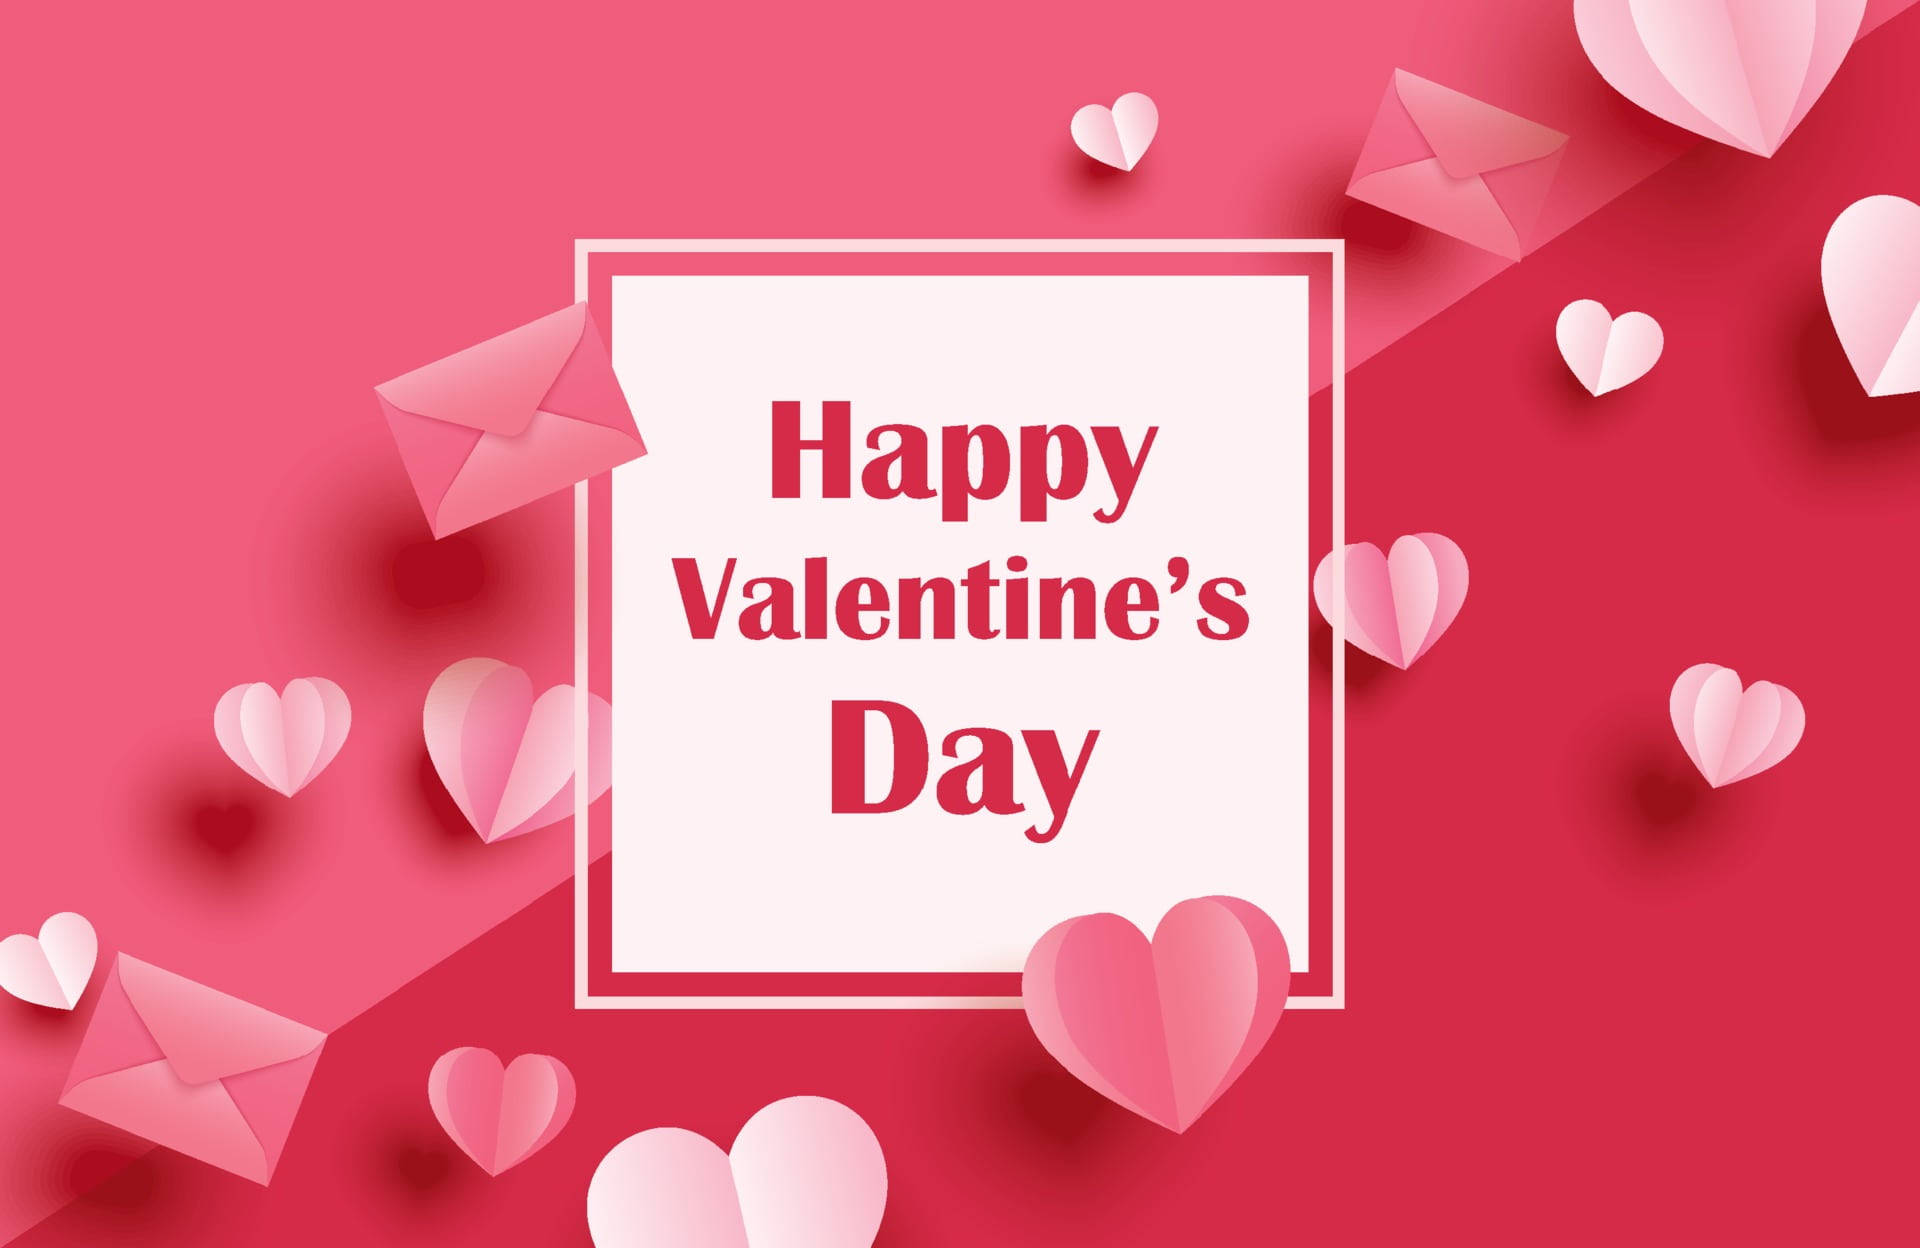 Happy Valentine’s Day Mail Background